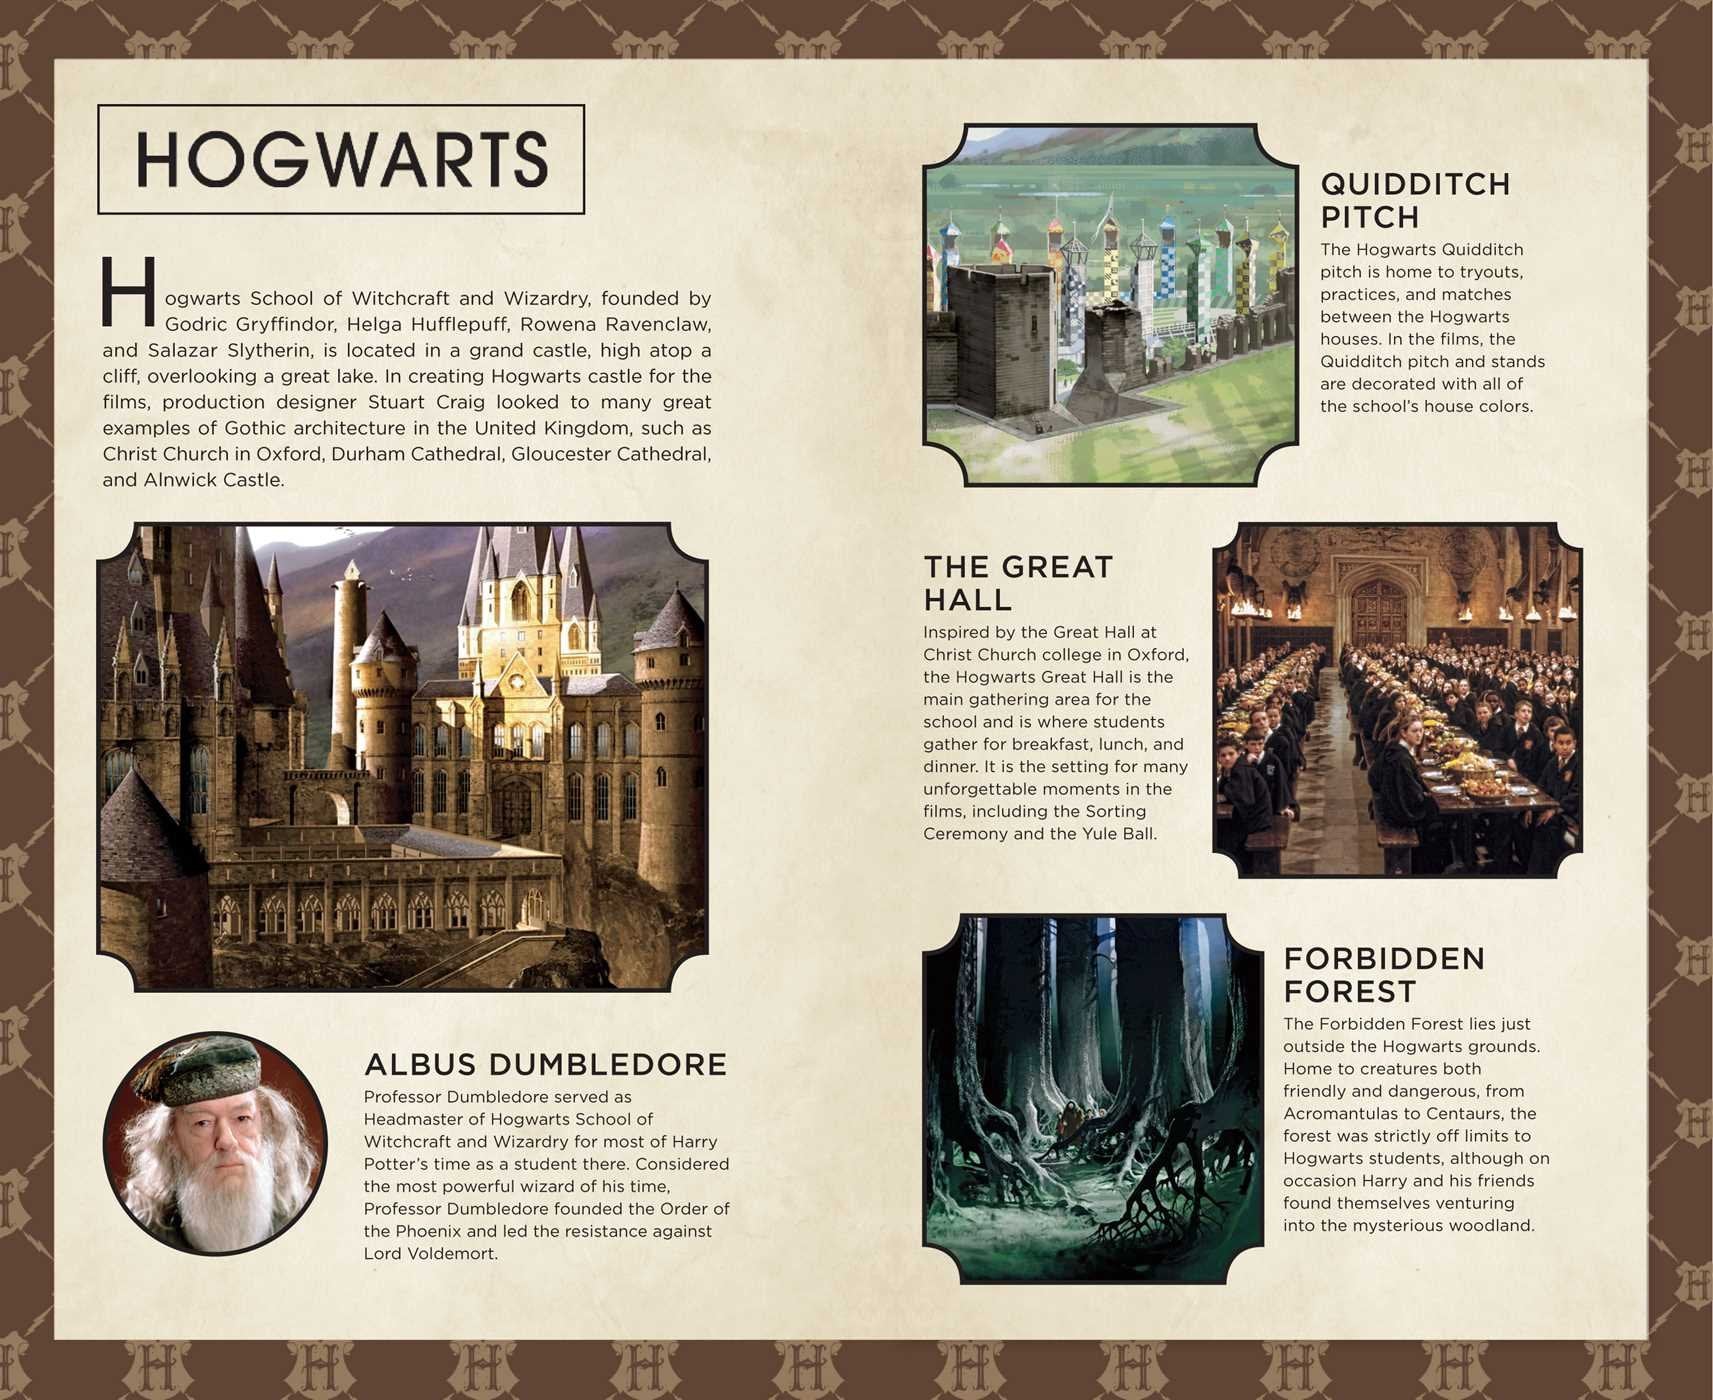 Harry Potter: Hogwarts Pocket